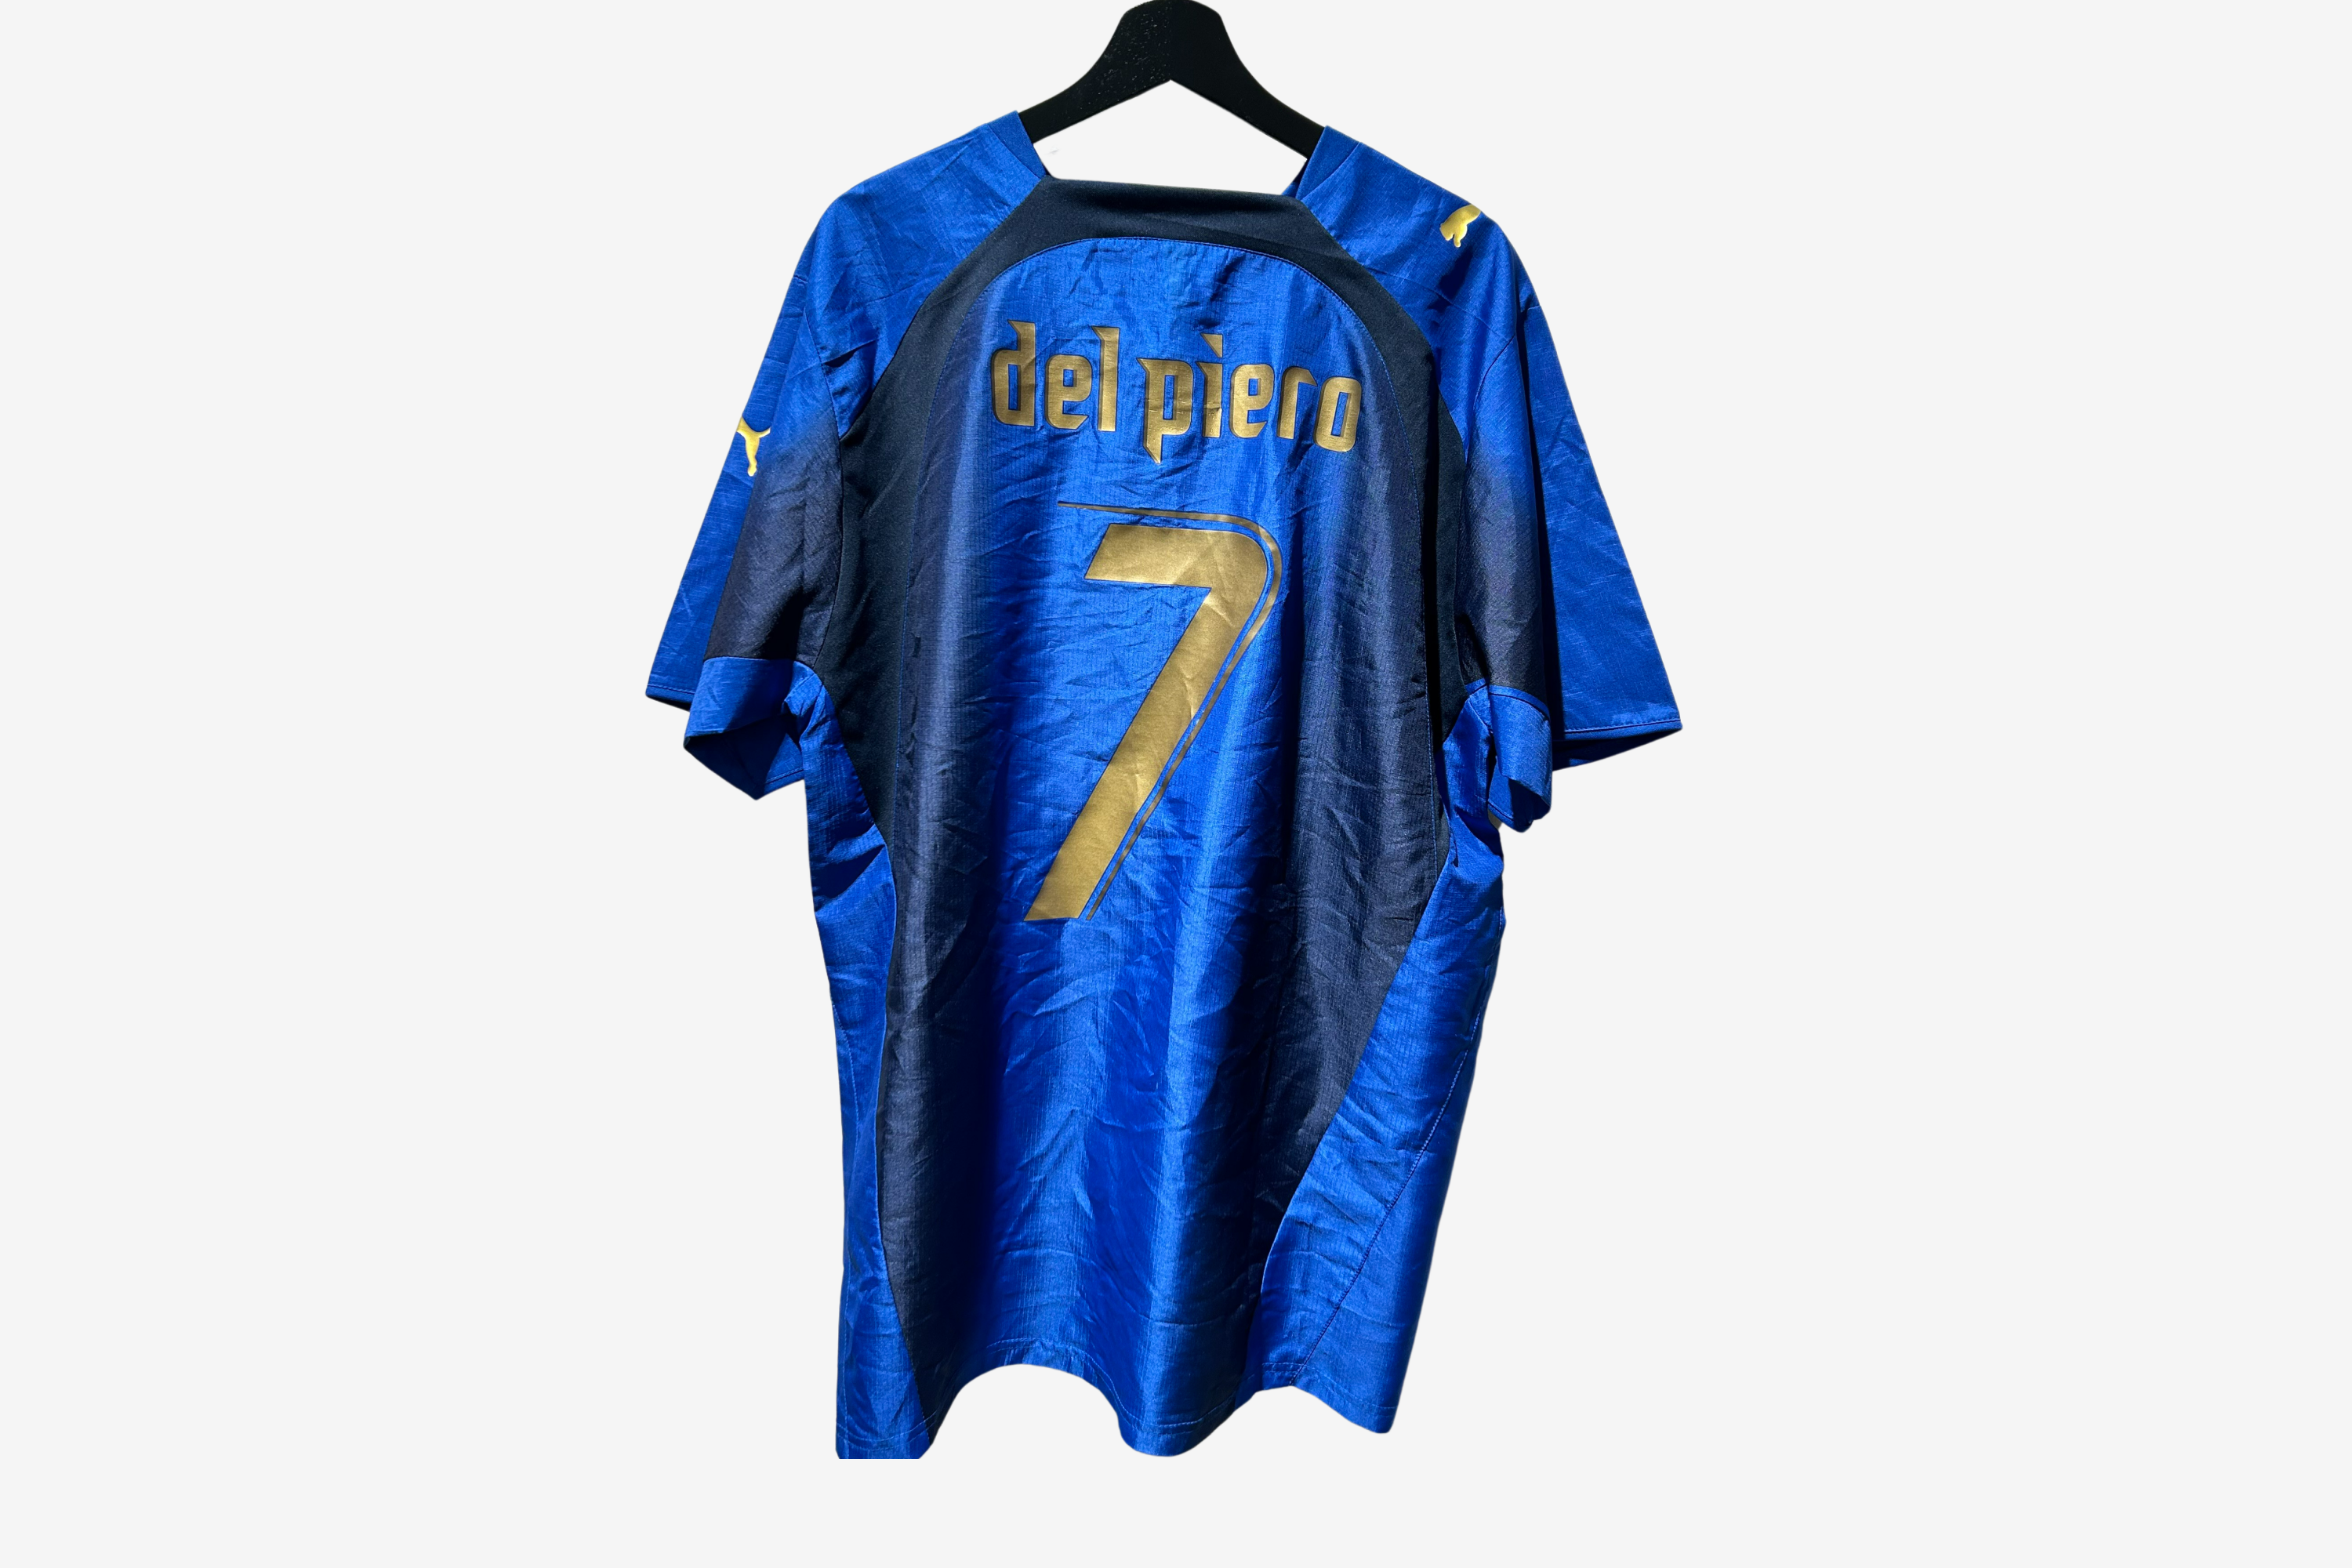 Puma - Italy 2006 Home Football Shirt 'DEL PIERO'